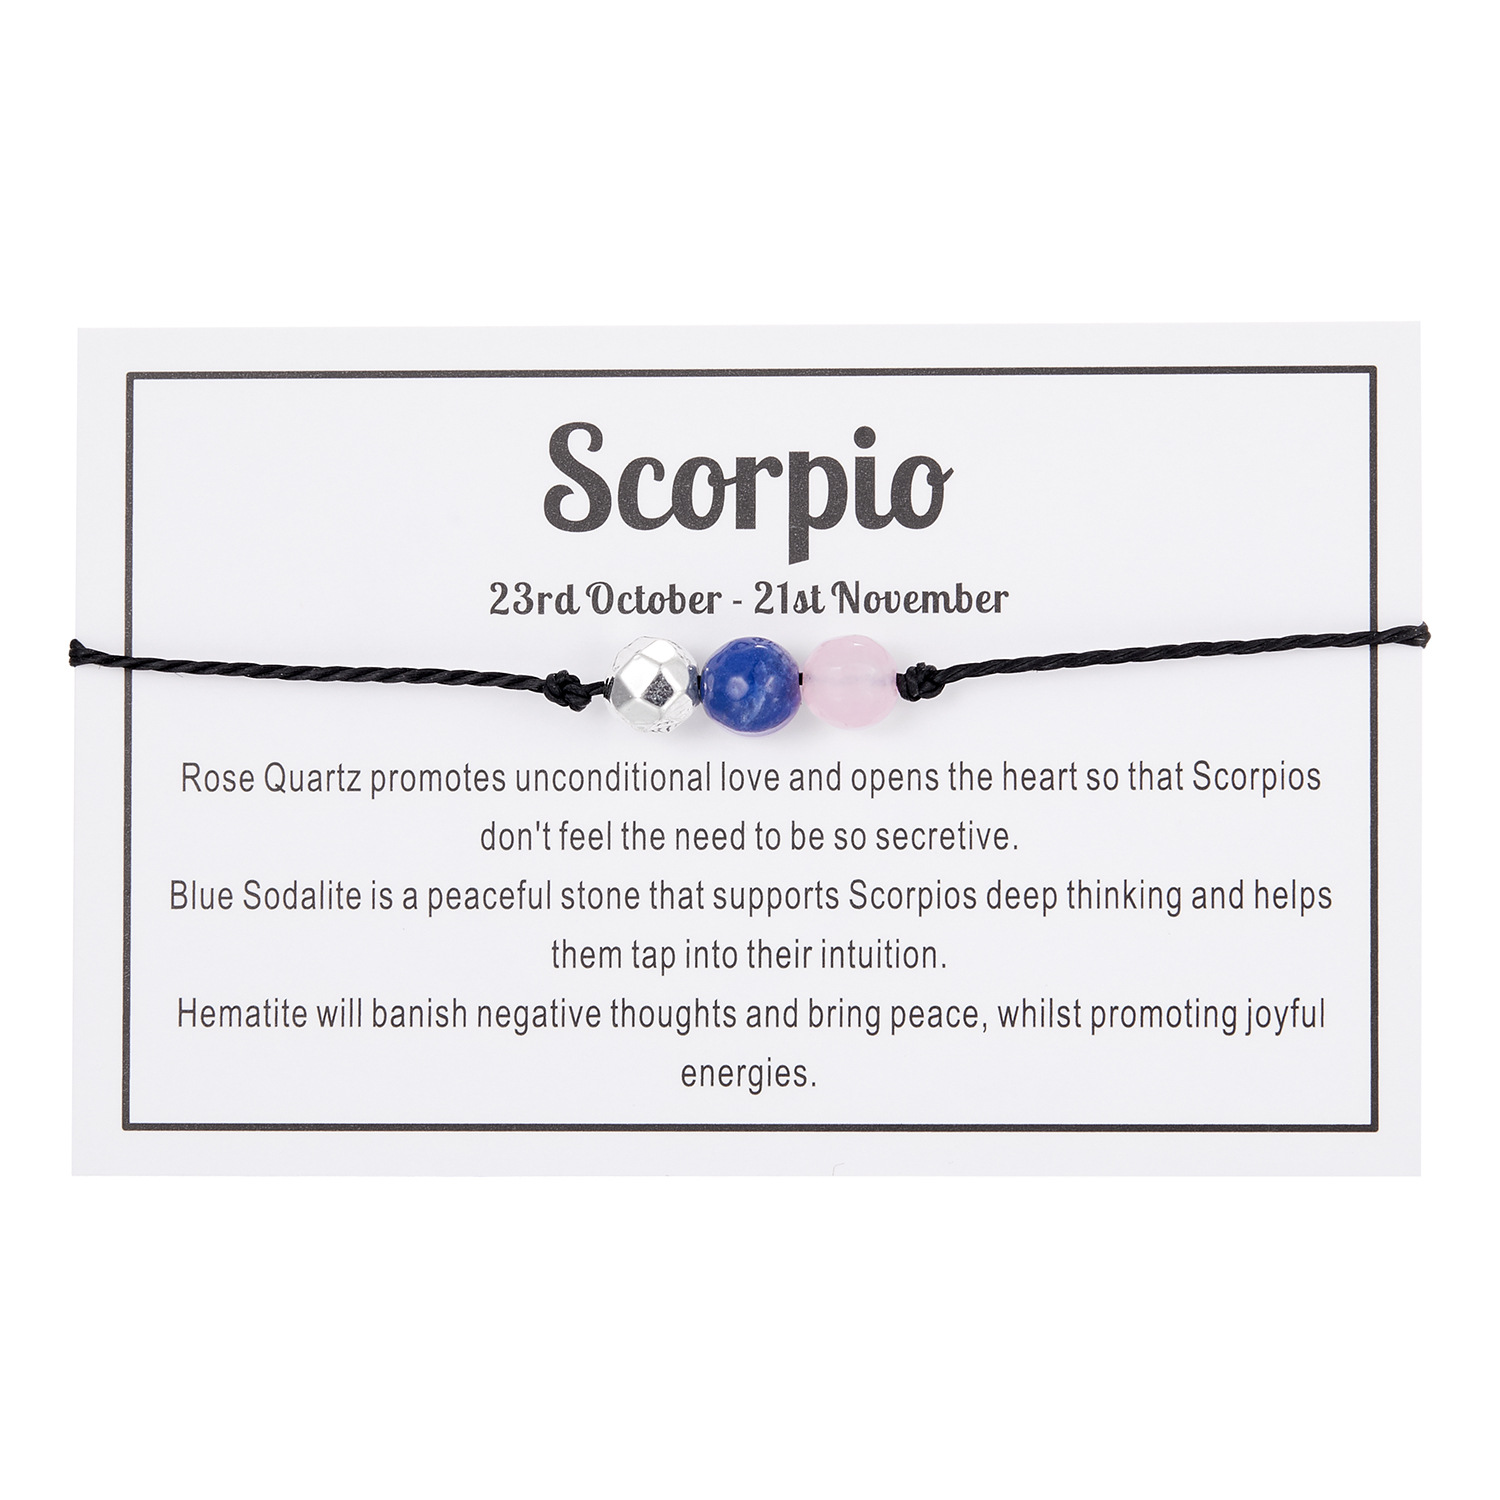 10:Skorpion